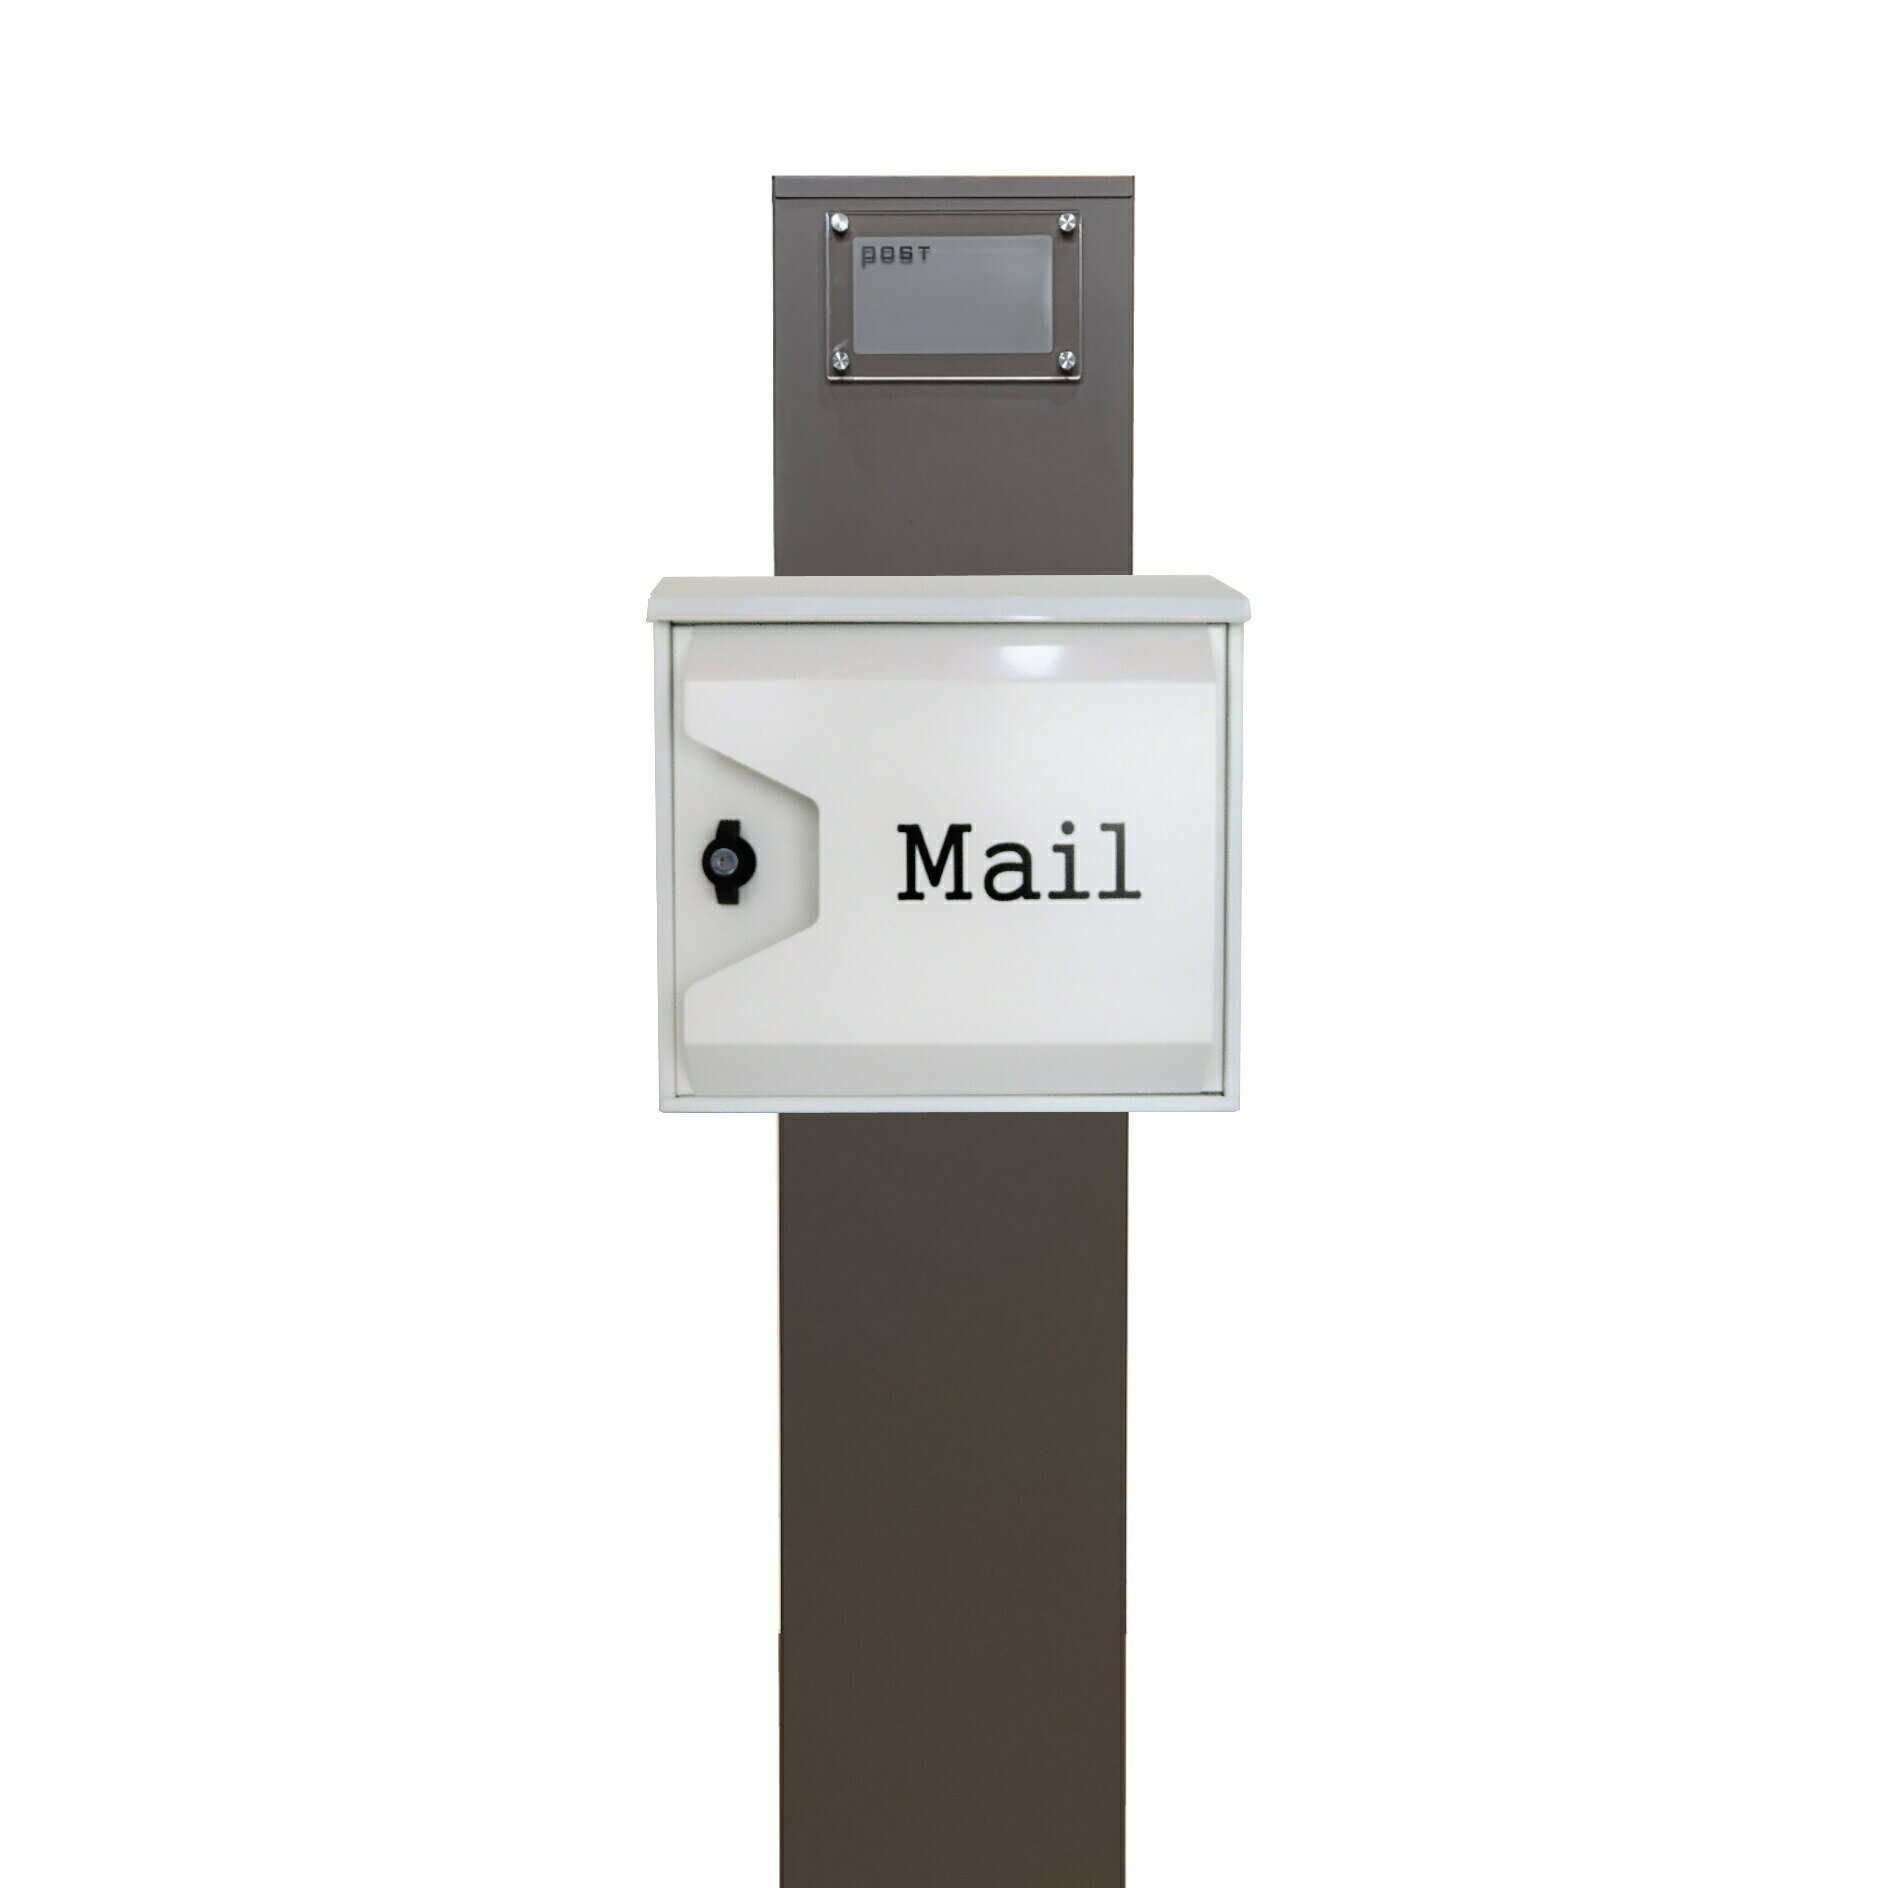 【郵便 ポスト】スタンド型 鍵付き 郵便受け おしゃれ 人気メールボックス ホワイト白色ポストpm271s-pm046(訳あり)